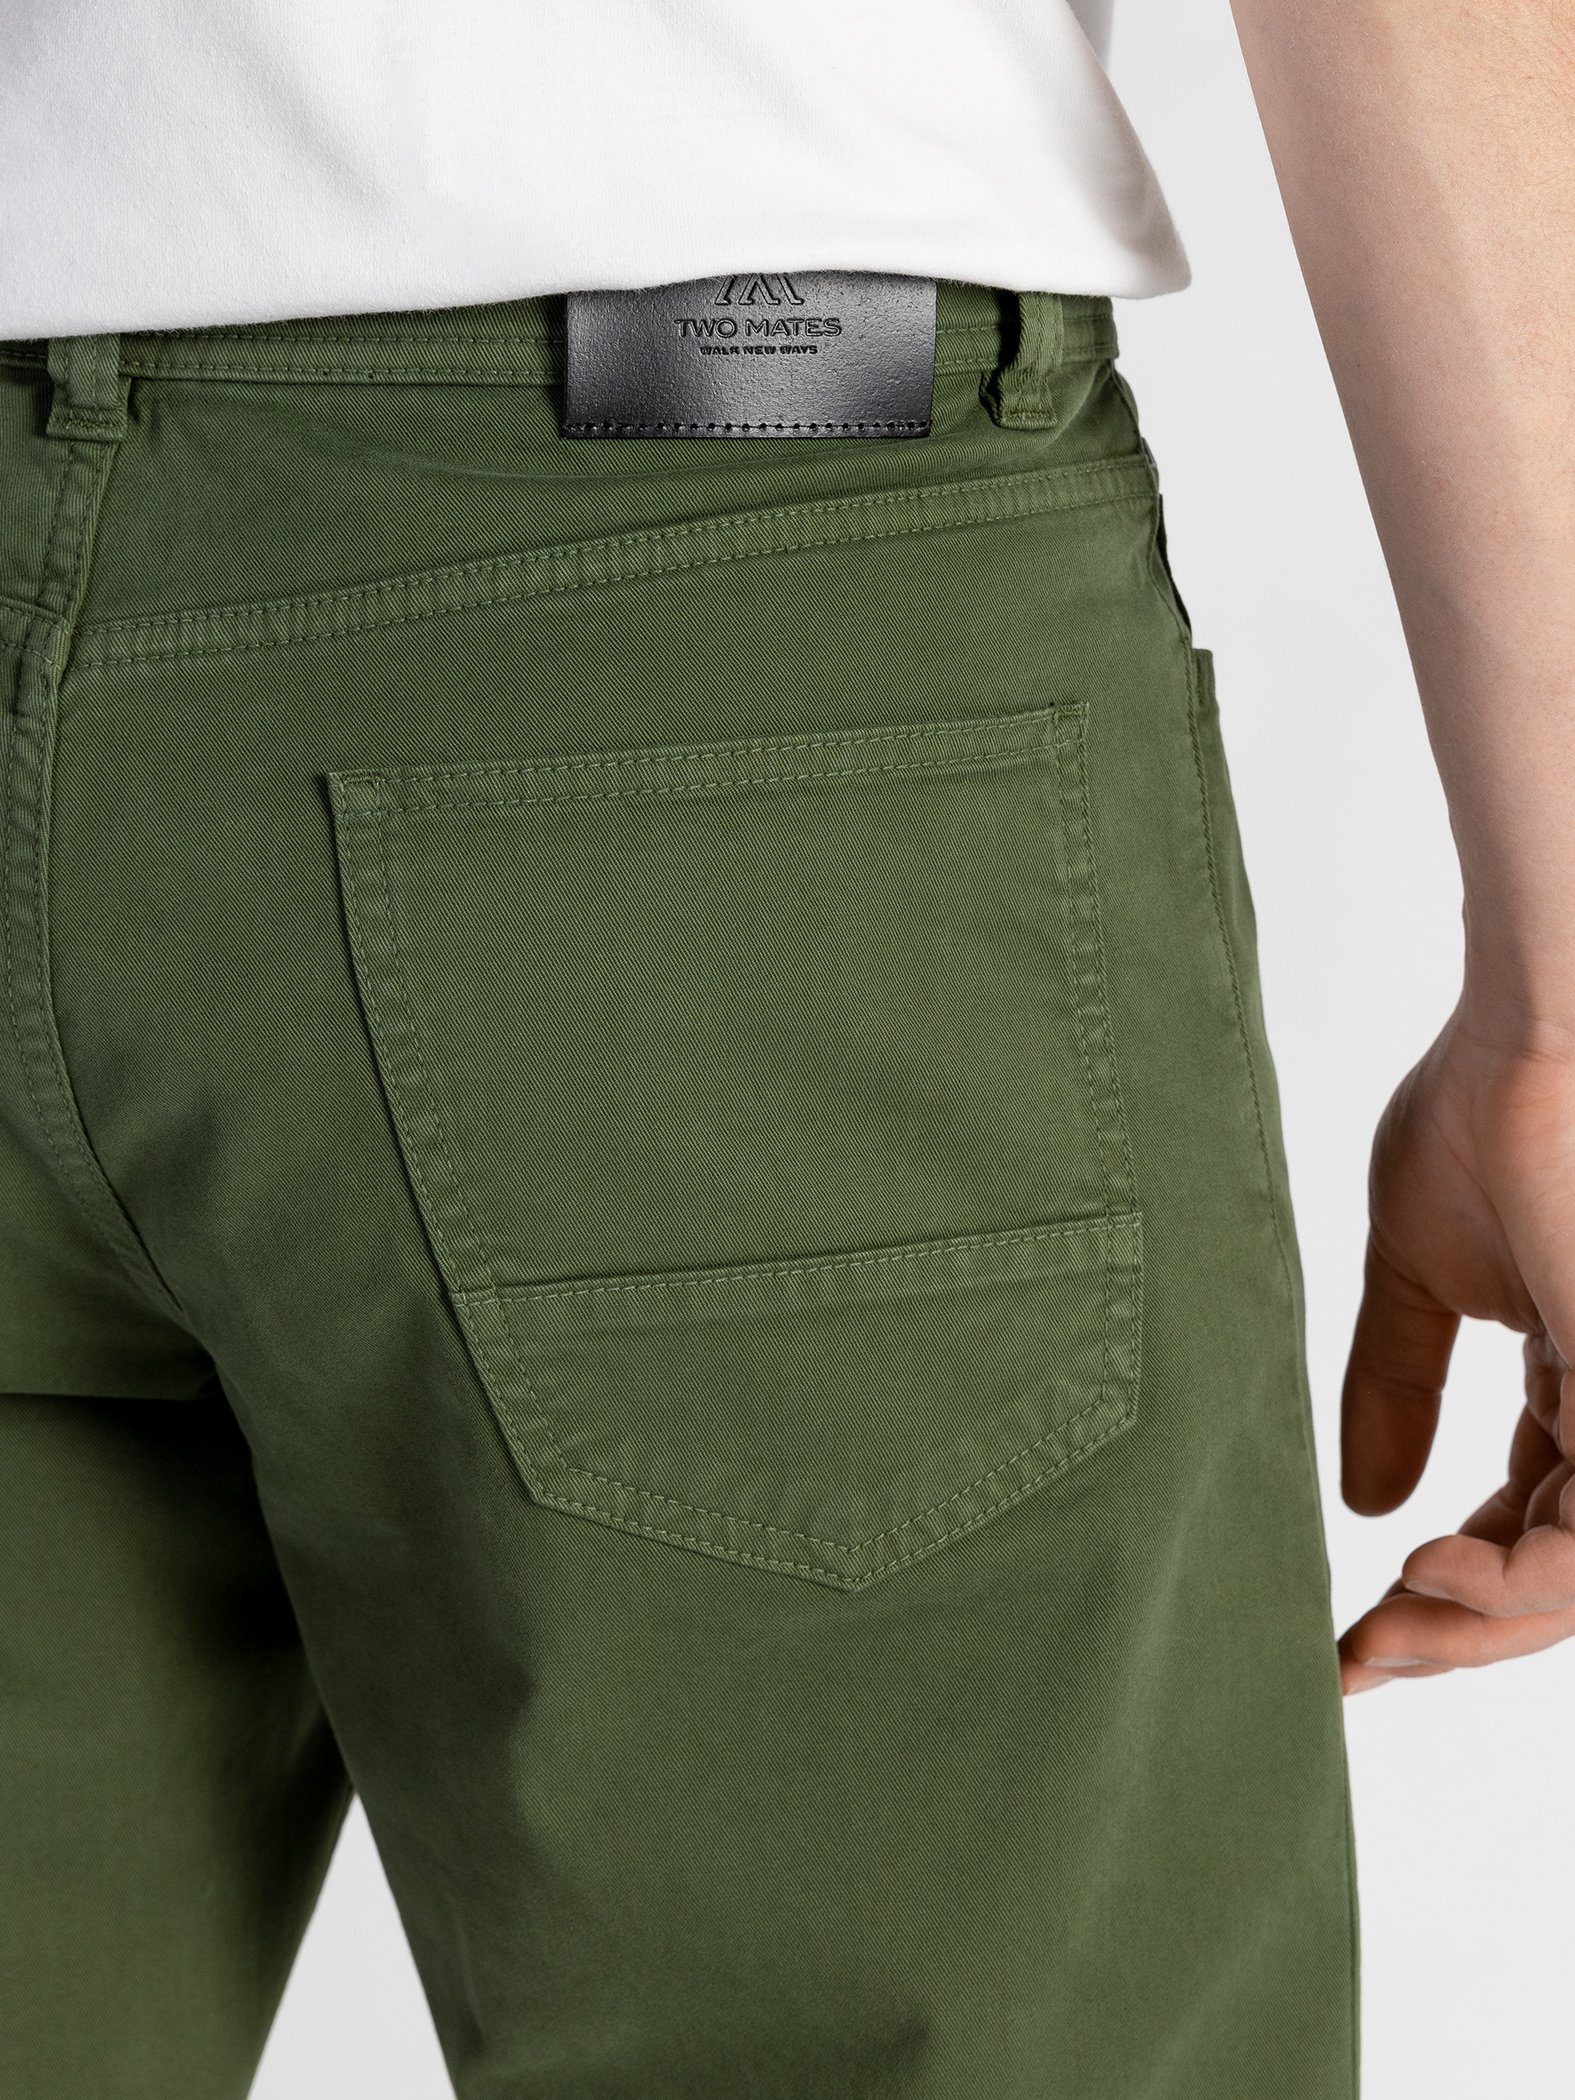 Grün Stoffhose Farbauswahl, mit 5-Pocket Bund, elastischem GOTS-zertifiziert TwoMates